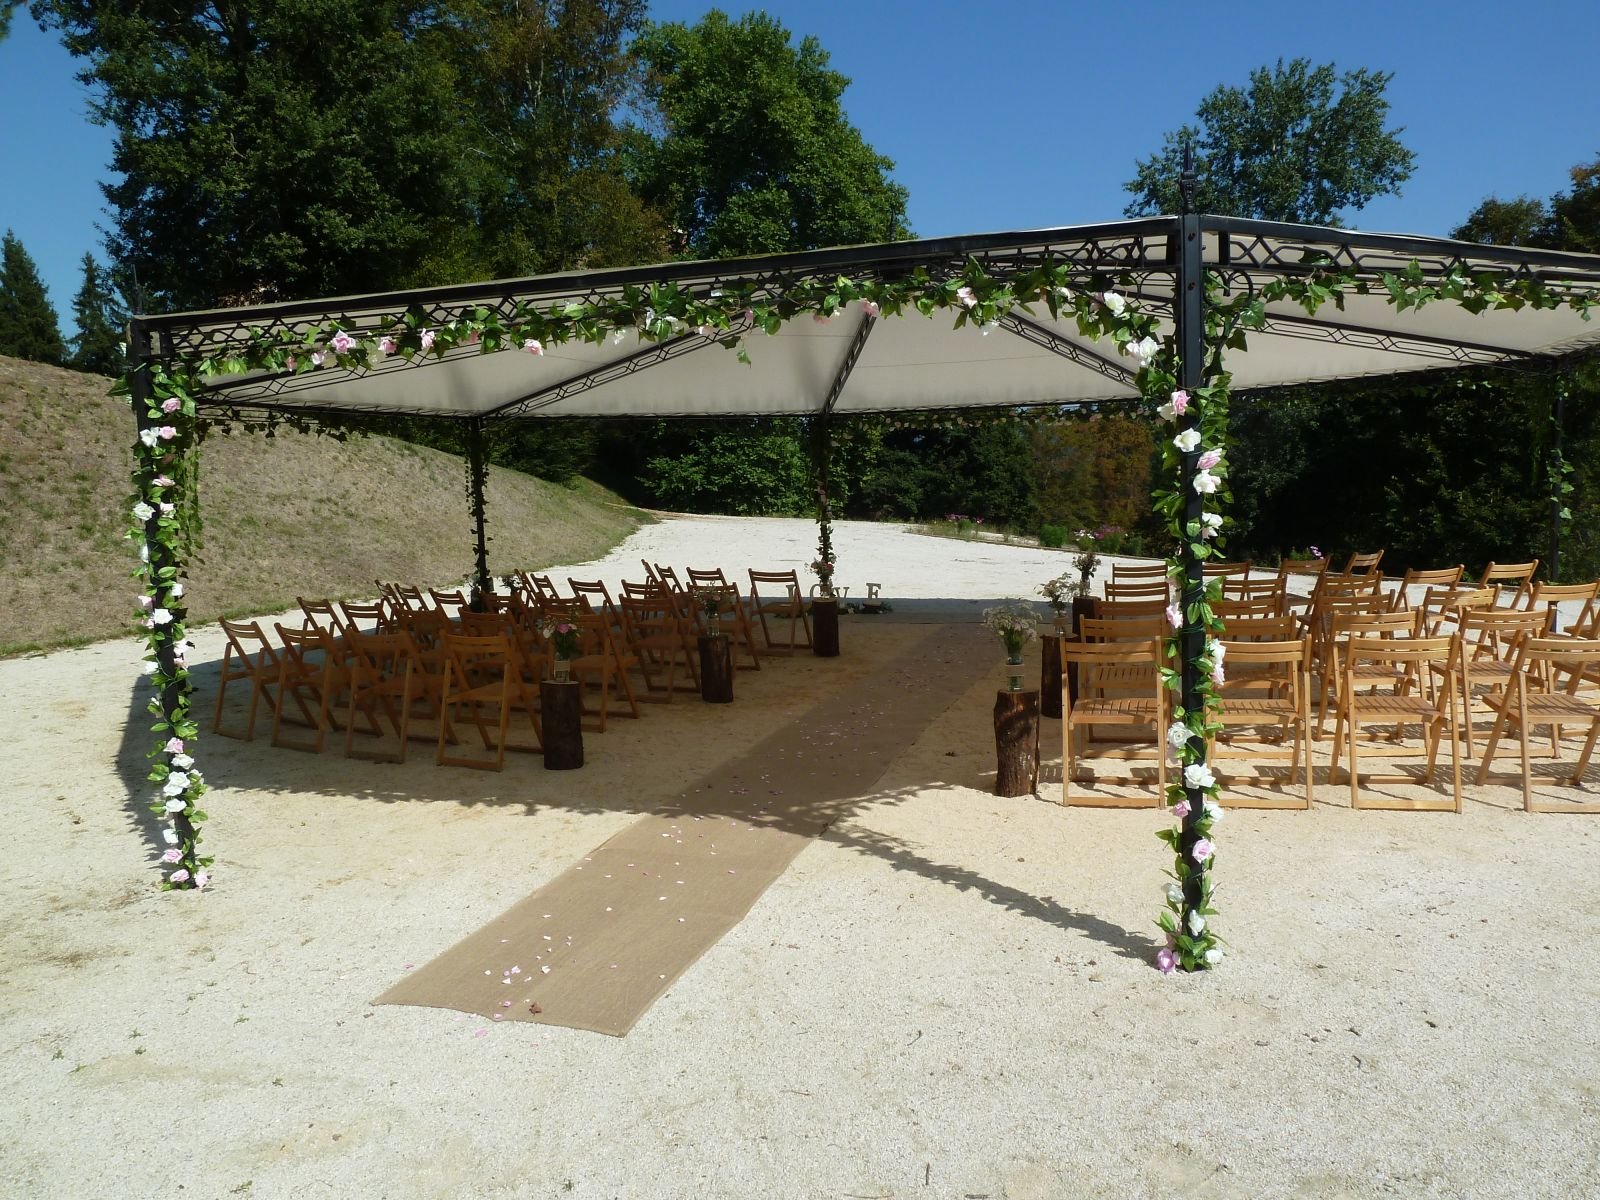 703/Photos/Ceremonies/chateau-de-maulmont-mariages-002.jpg